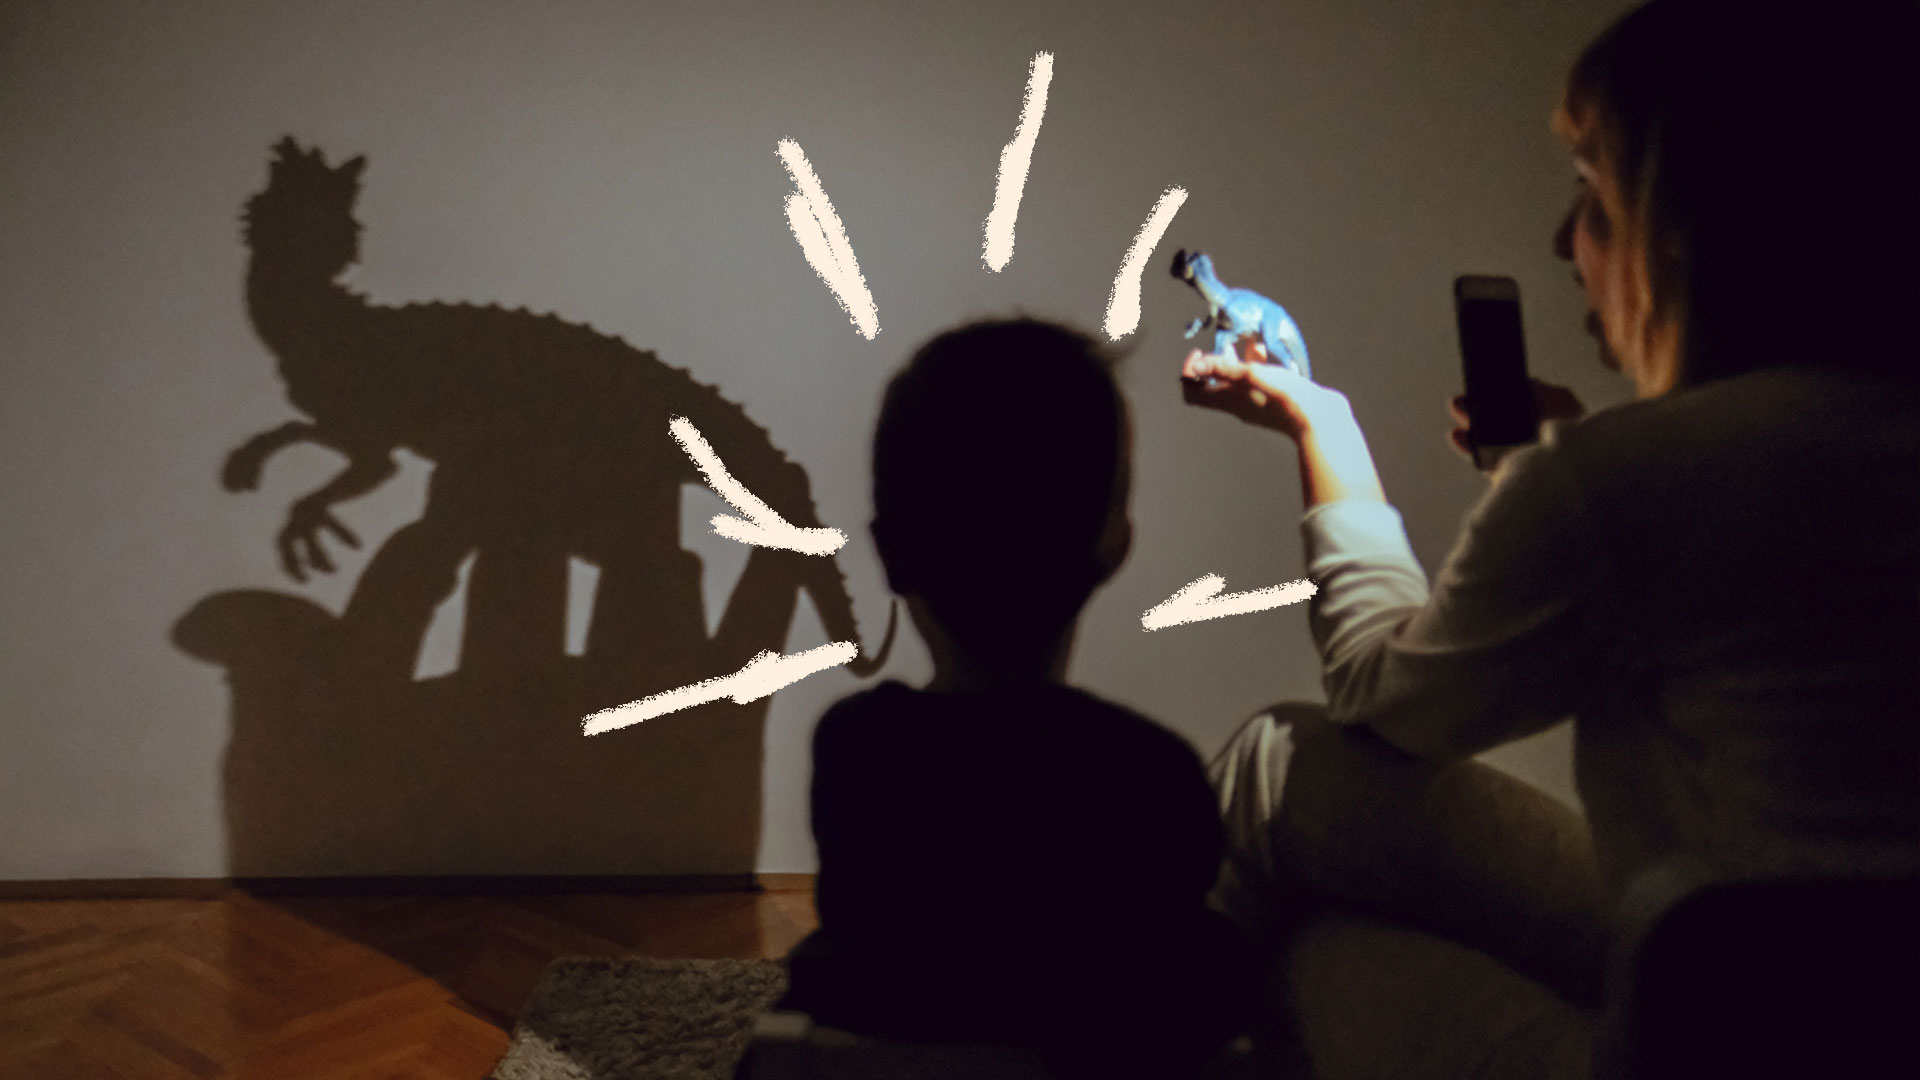 Brincadeiras com lanterna: foto de um criança que brinca com sua sombra, no escuro.